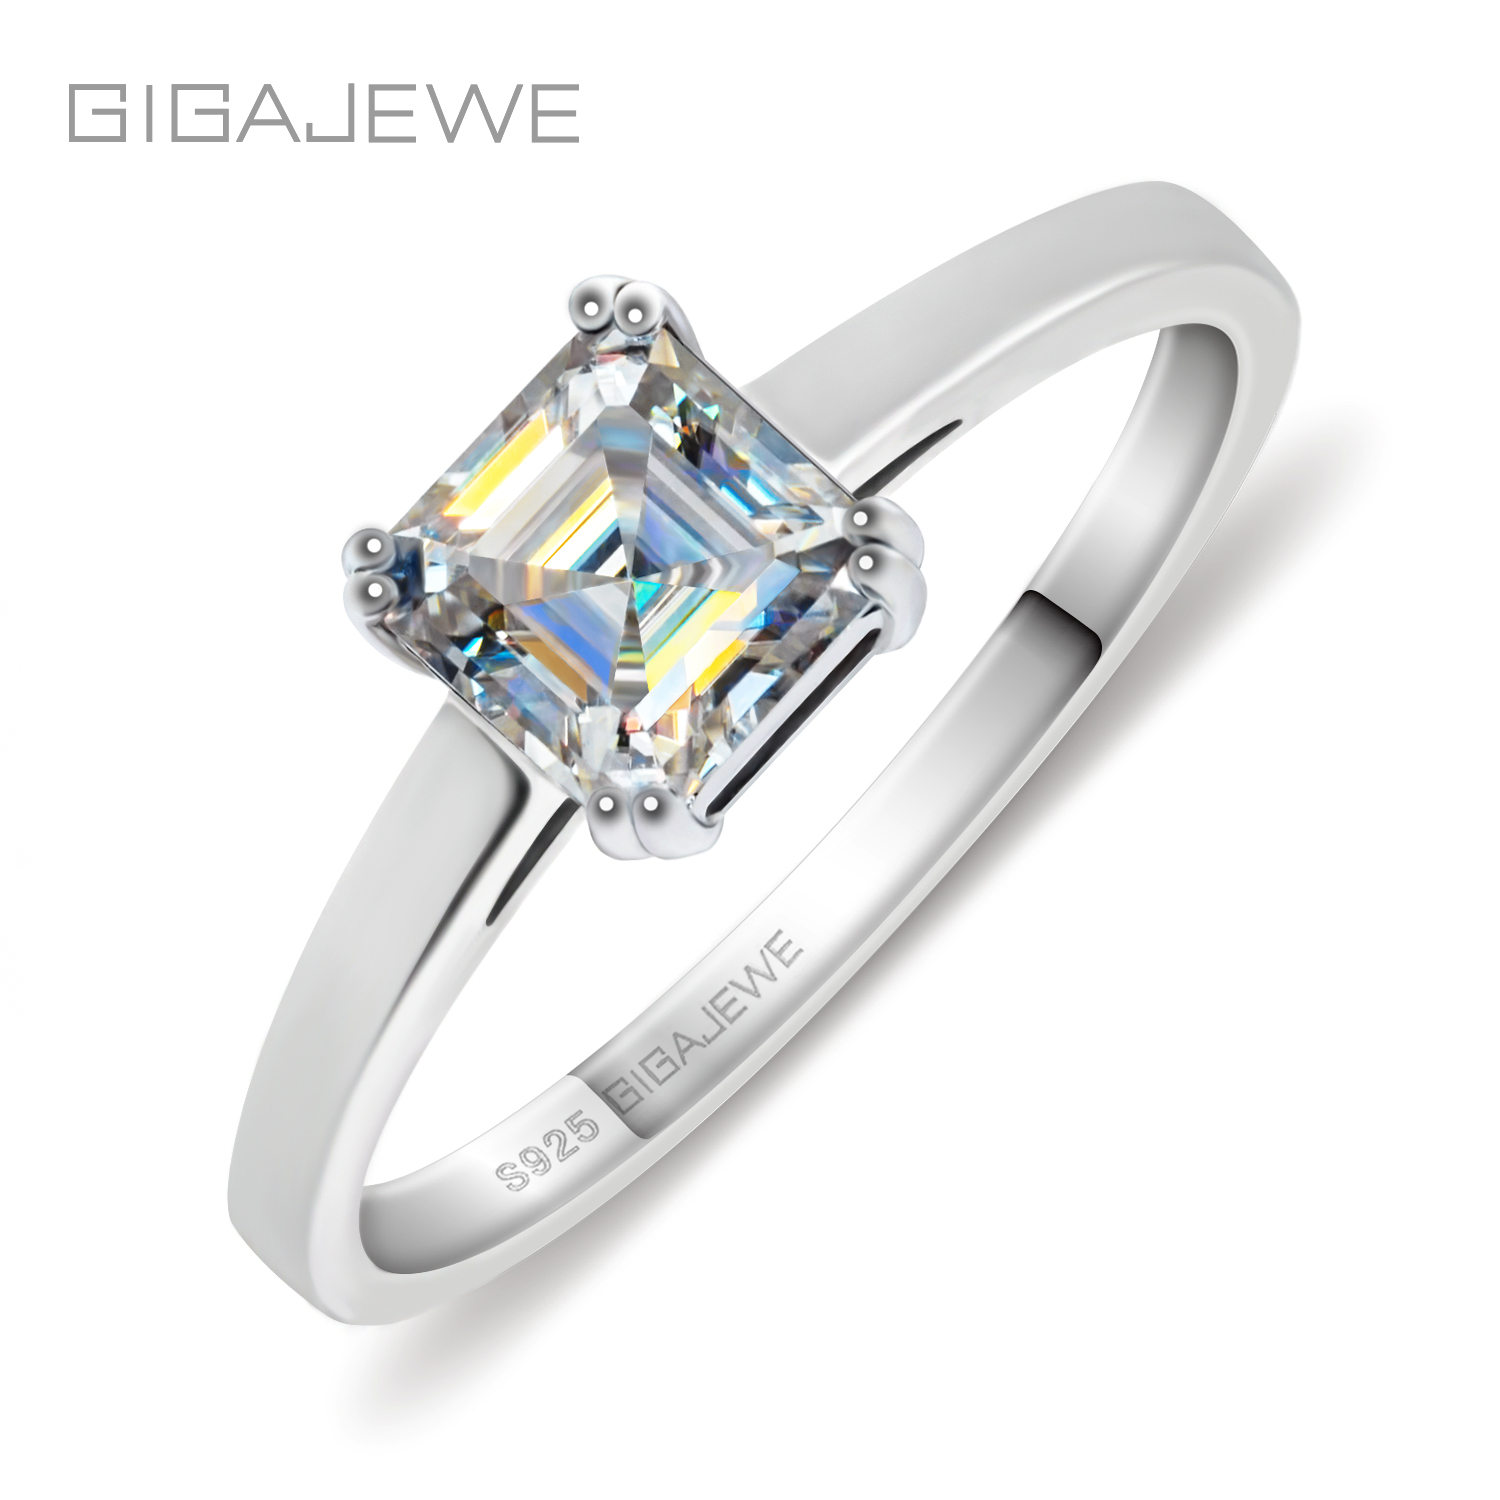 GIGAJEWE 0.8ct 5.5mm D Asscher 18K 白金镀 925 银莫桑石戒指钻石测试通过珠宝女士女孩礼物